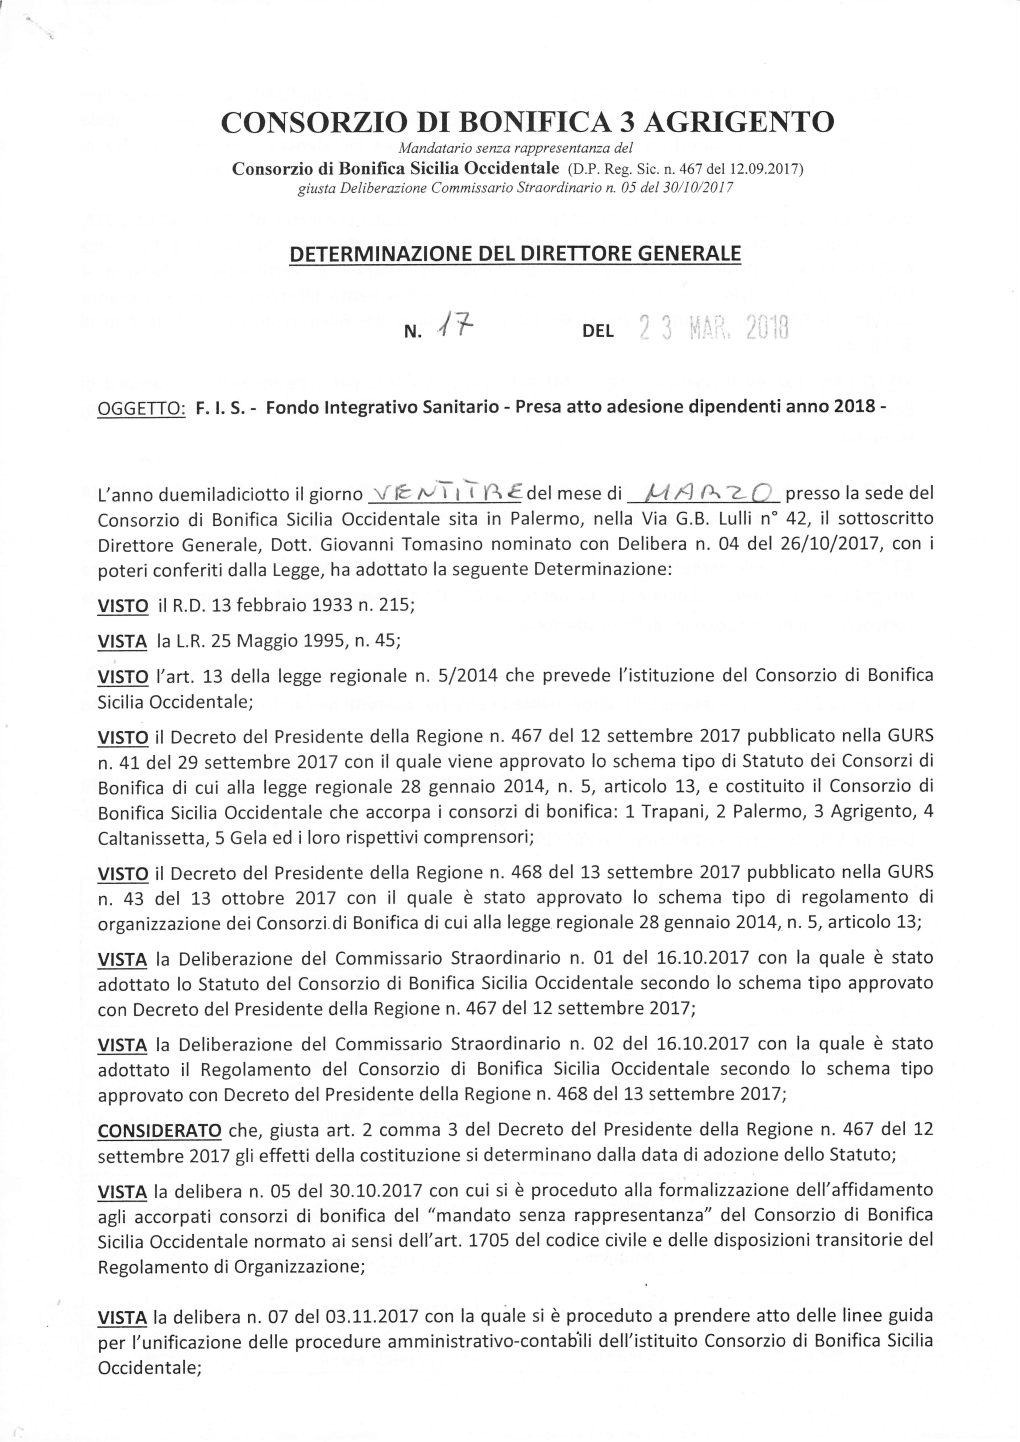 COI{SORZIO DI BONIFICA 3 AGRIGENTO Mandatario S Enza Rappresentanza Del Consorzio Di Bonilica Sicilia Occidentale (D.P